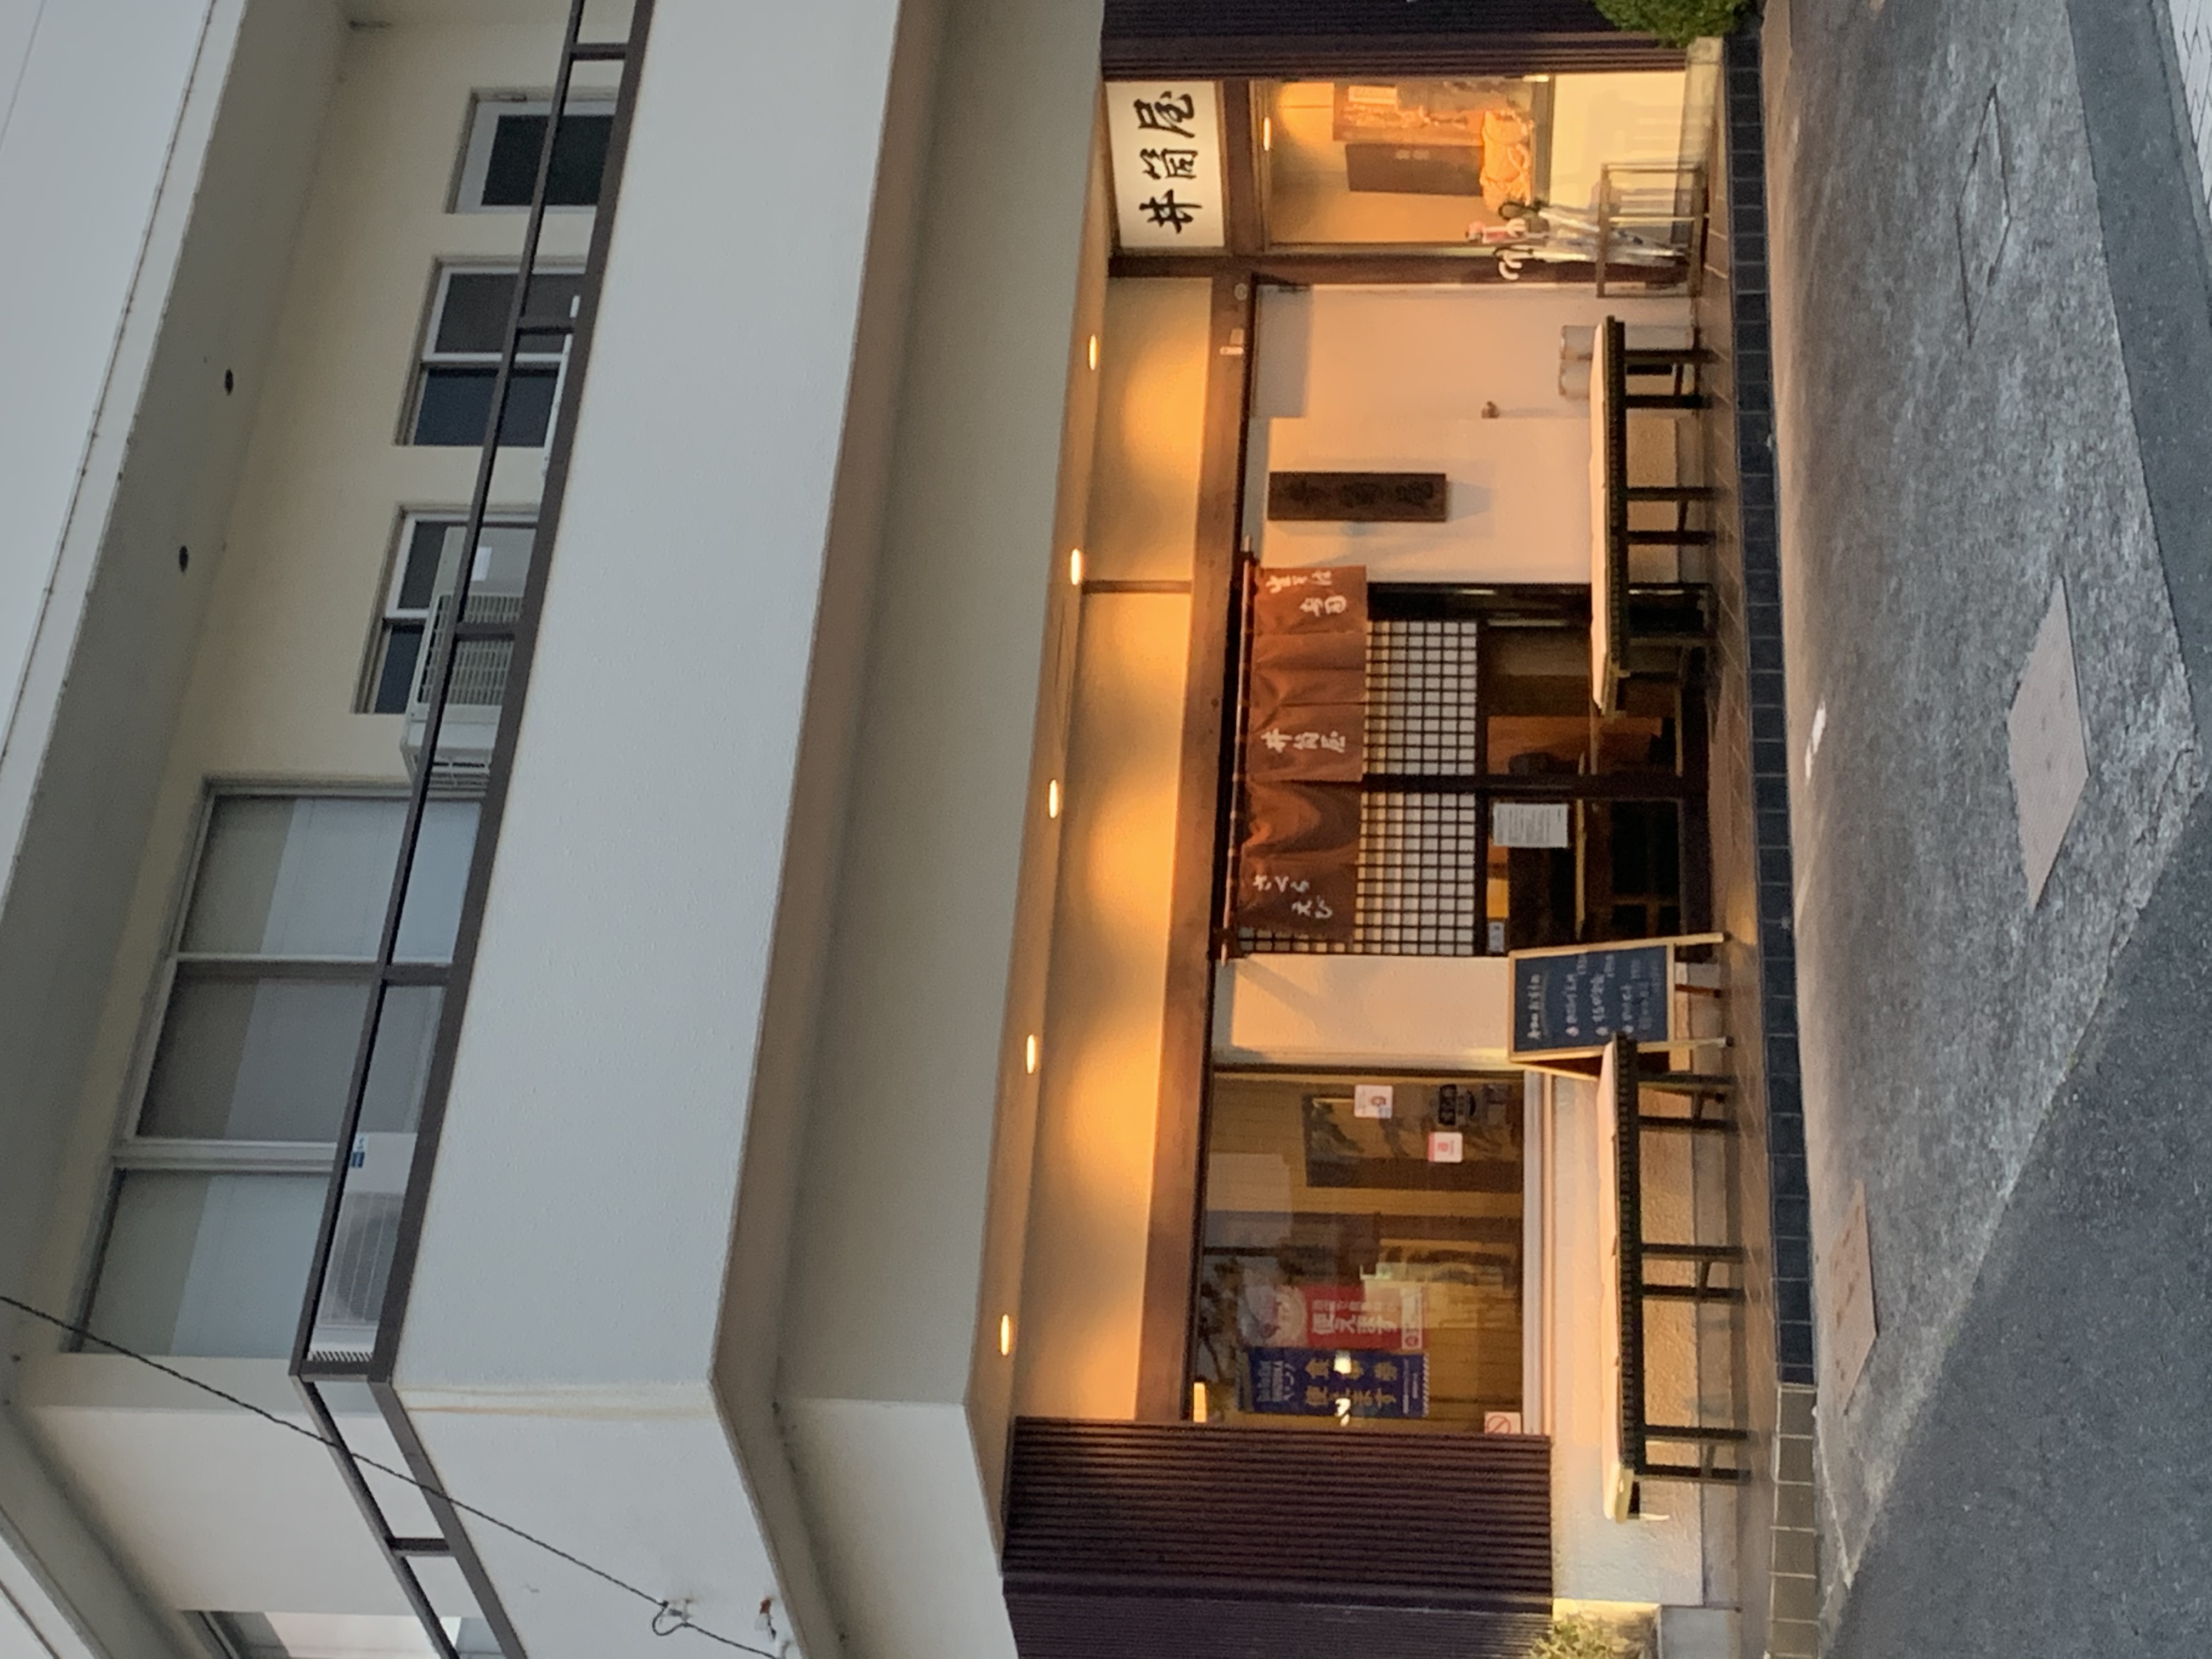 井筒屋は、大正5年に静岡県由比で蕎麦屋として創業しました。由比港で水揚げされた桜えびや地魚を提供するお店です。